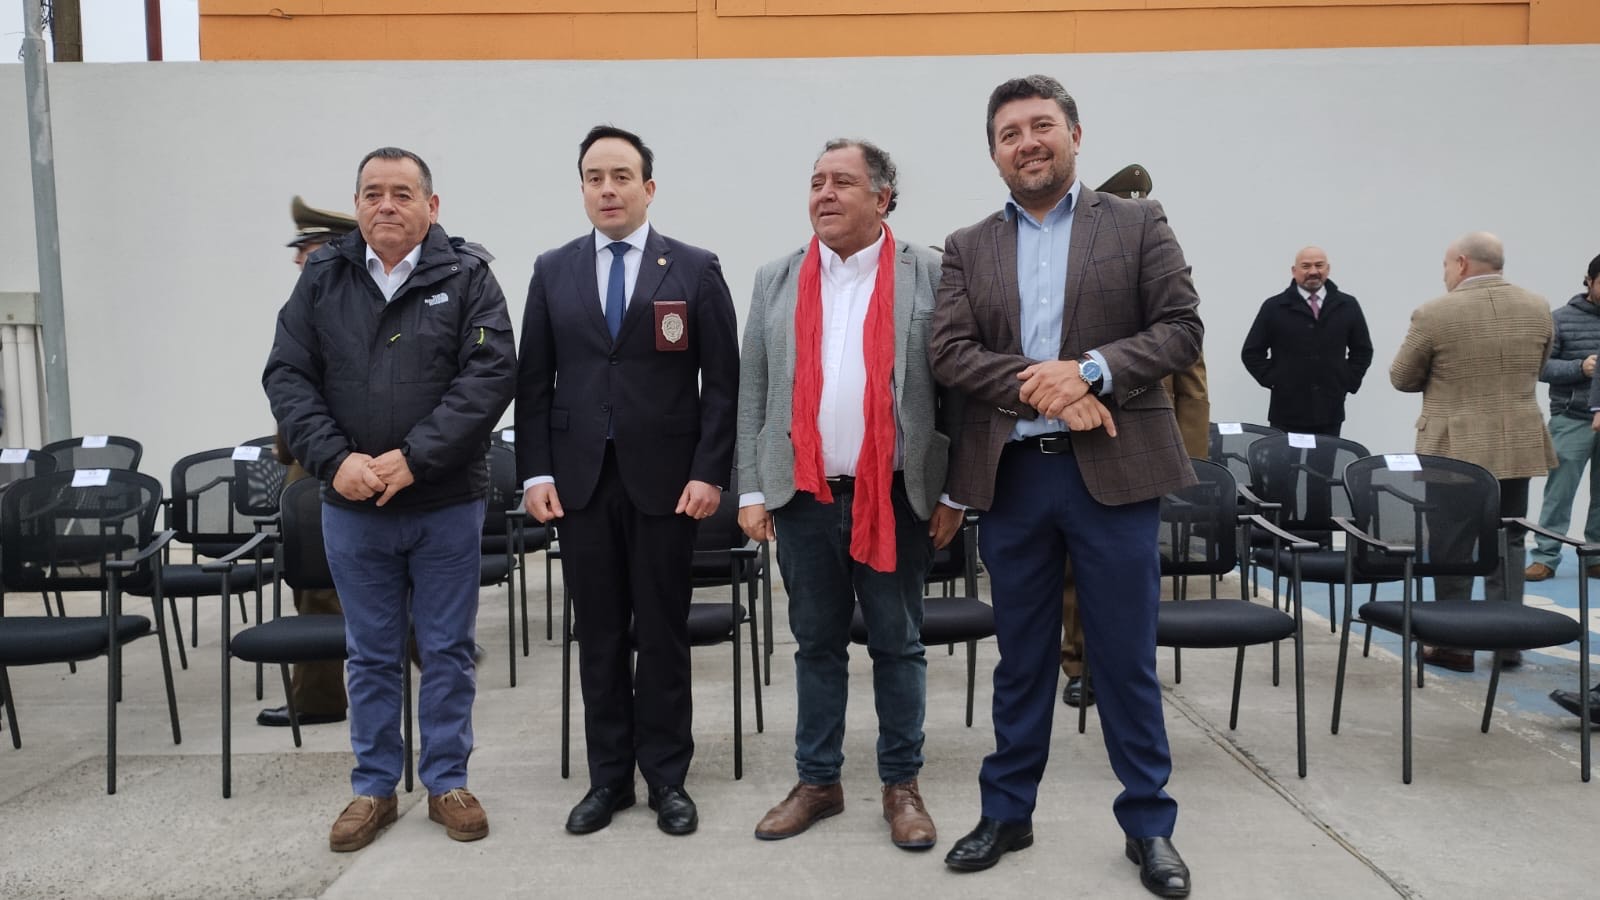 Alcalde Segovia y aniversario de la PDI: “Chile hoy cuenta con una policía moderna, profesional y preparada para enfrentar los nuevos tipos de crímenes”